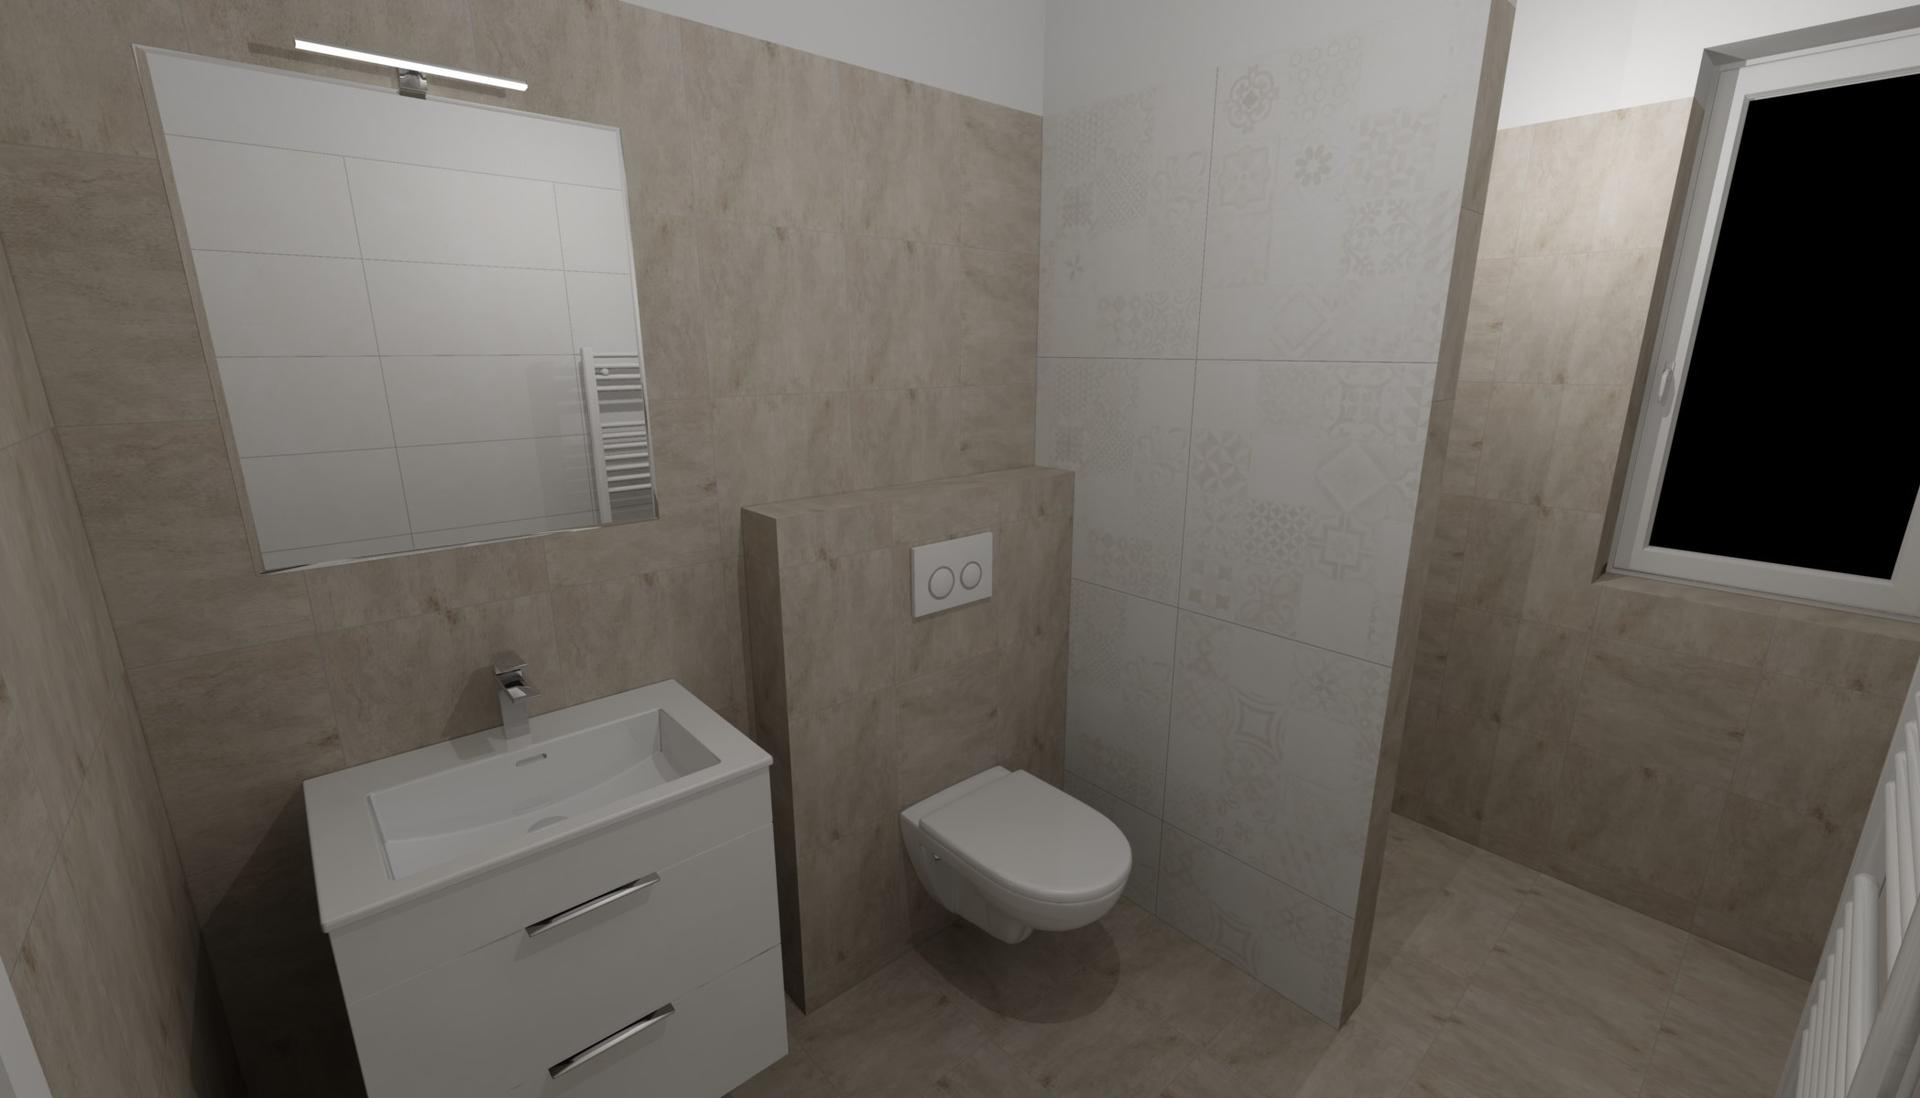 Koupelny - Vizualizace spodní koupelny navržená v Siku 